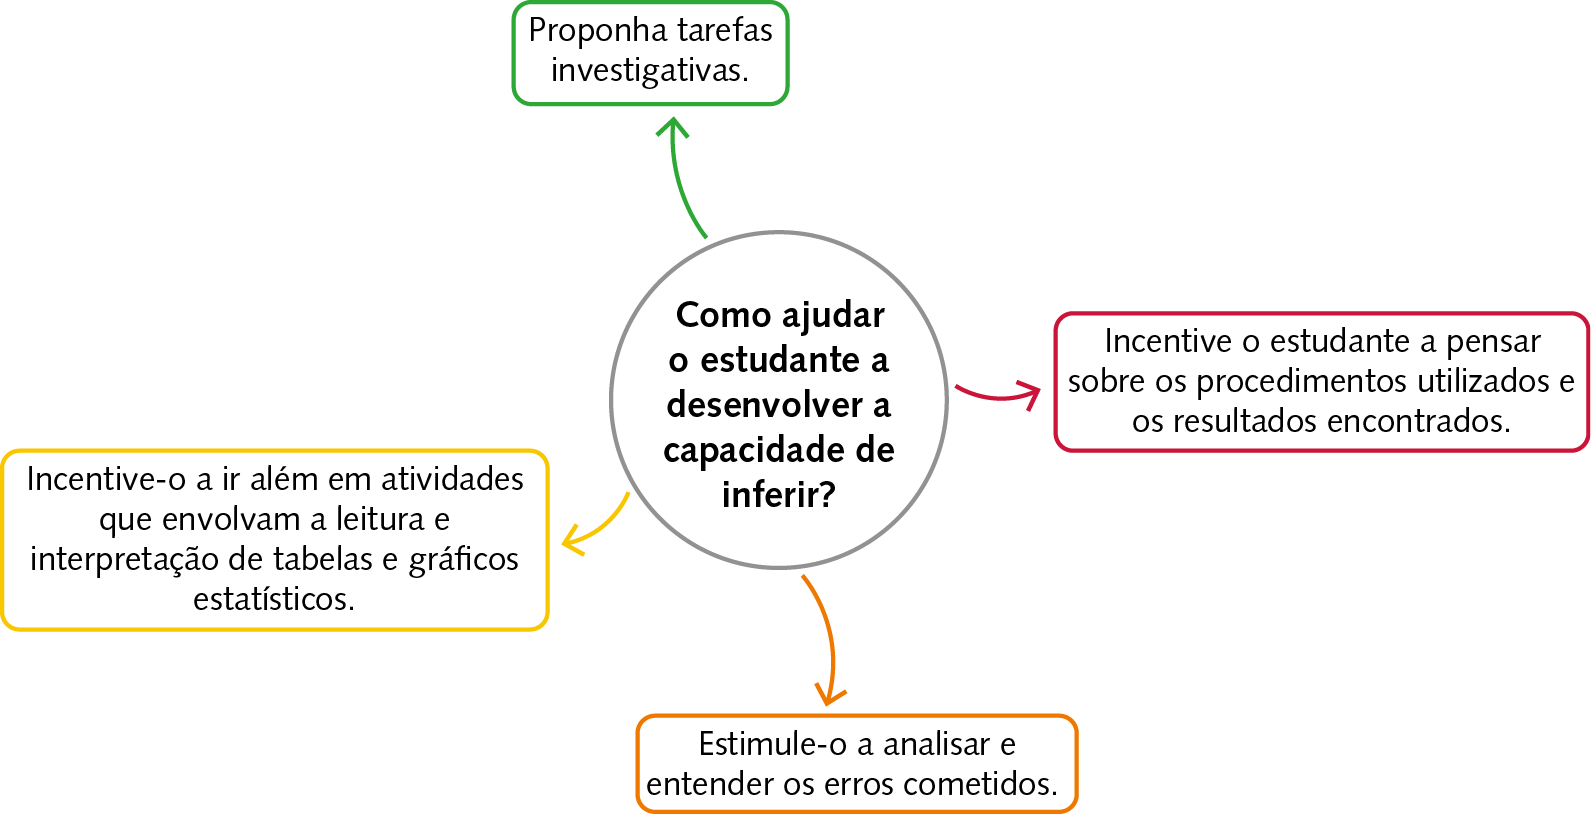 Esquema, No centro, um círculo de fundo branco com a seguinte questão em seu interior: Como ajudar o estudante a desenvolver a capacidade de inferir?  Da circunferência partem 4 setas: verde, vermelha, laranja e amarela.  Seta verde para boxe com o texto: Proponha tarefas investigativas. Seta vermelha para boxe com o texto: Incentive o estudante a pensar sobre os procedimentos utilizados e os resultados encontrados. Seta laranja para boxe com o texto: Estimule-o a analisar e entender os erros cometidos. Seta amarela para boxe com o texto: Incentive-o a ir além em atividades que envolvam a leitura e interpretação de tabelas e gráficos estatísticos.